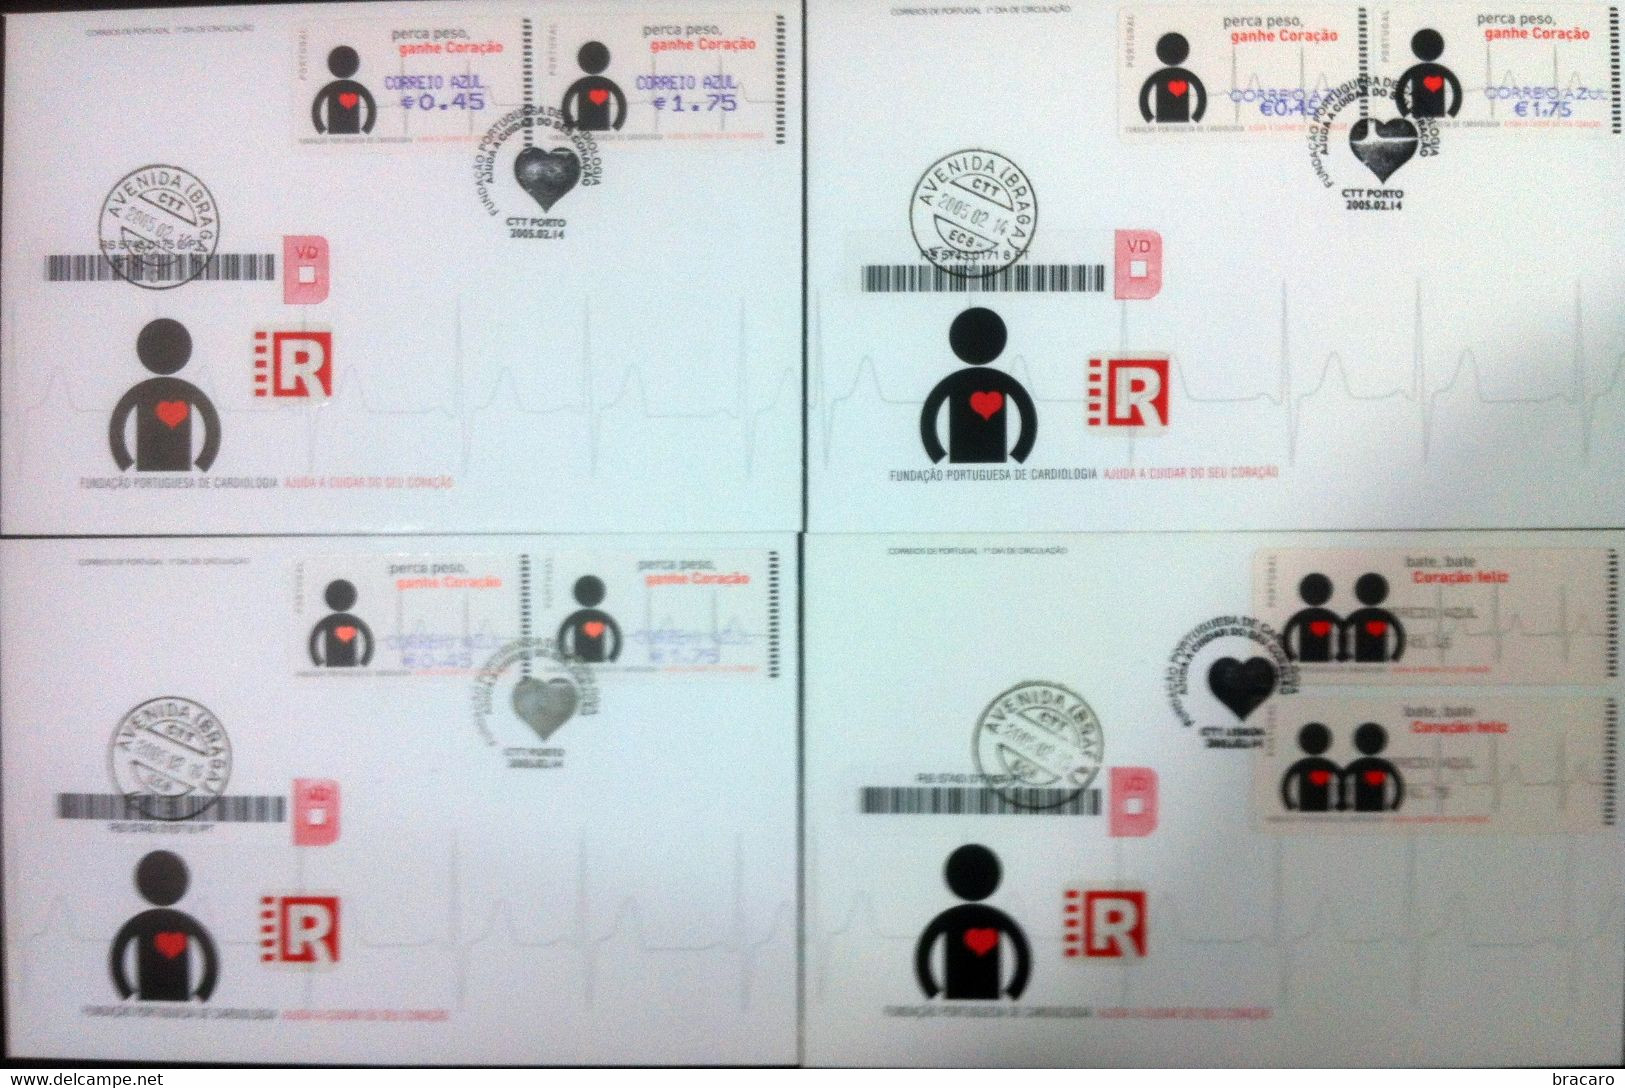 Portugal - ATM Machine Stamps - FDC (cover) X 4 - CORAÇÃO / CARDIOLOGIA 2005 - CORREIO AZUL Registered, Cancel Braga - Maschinenstempel (EMA)